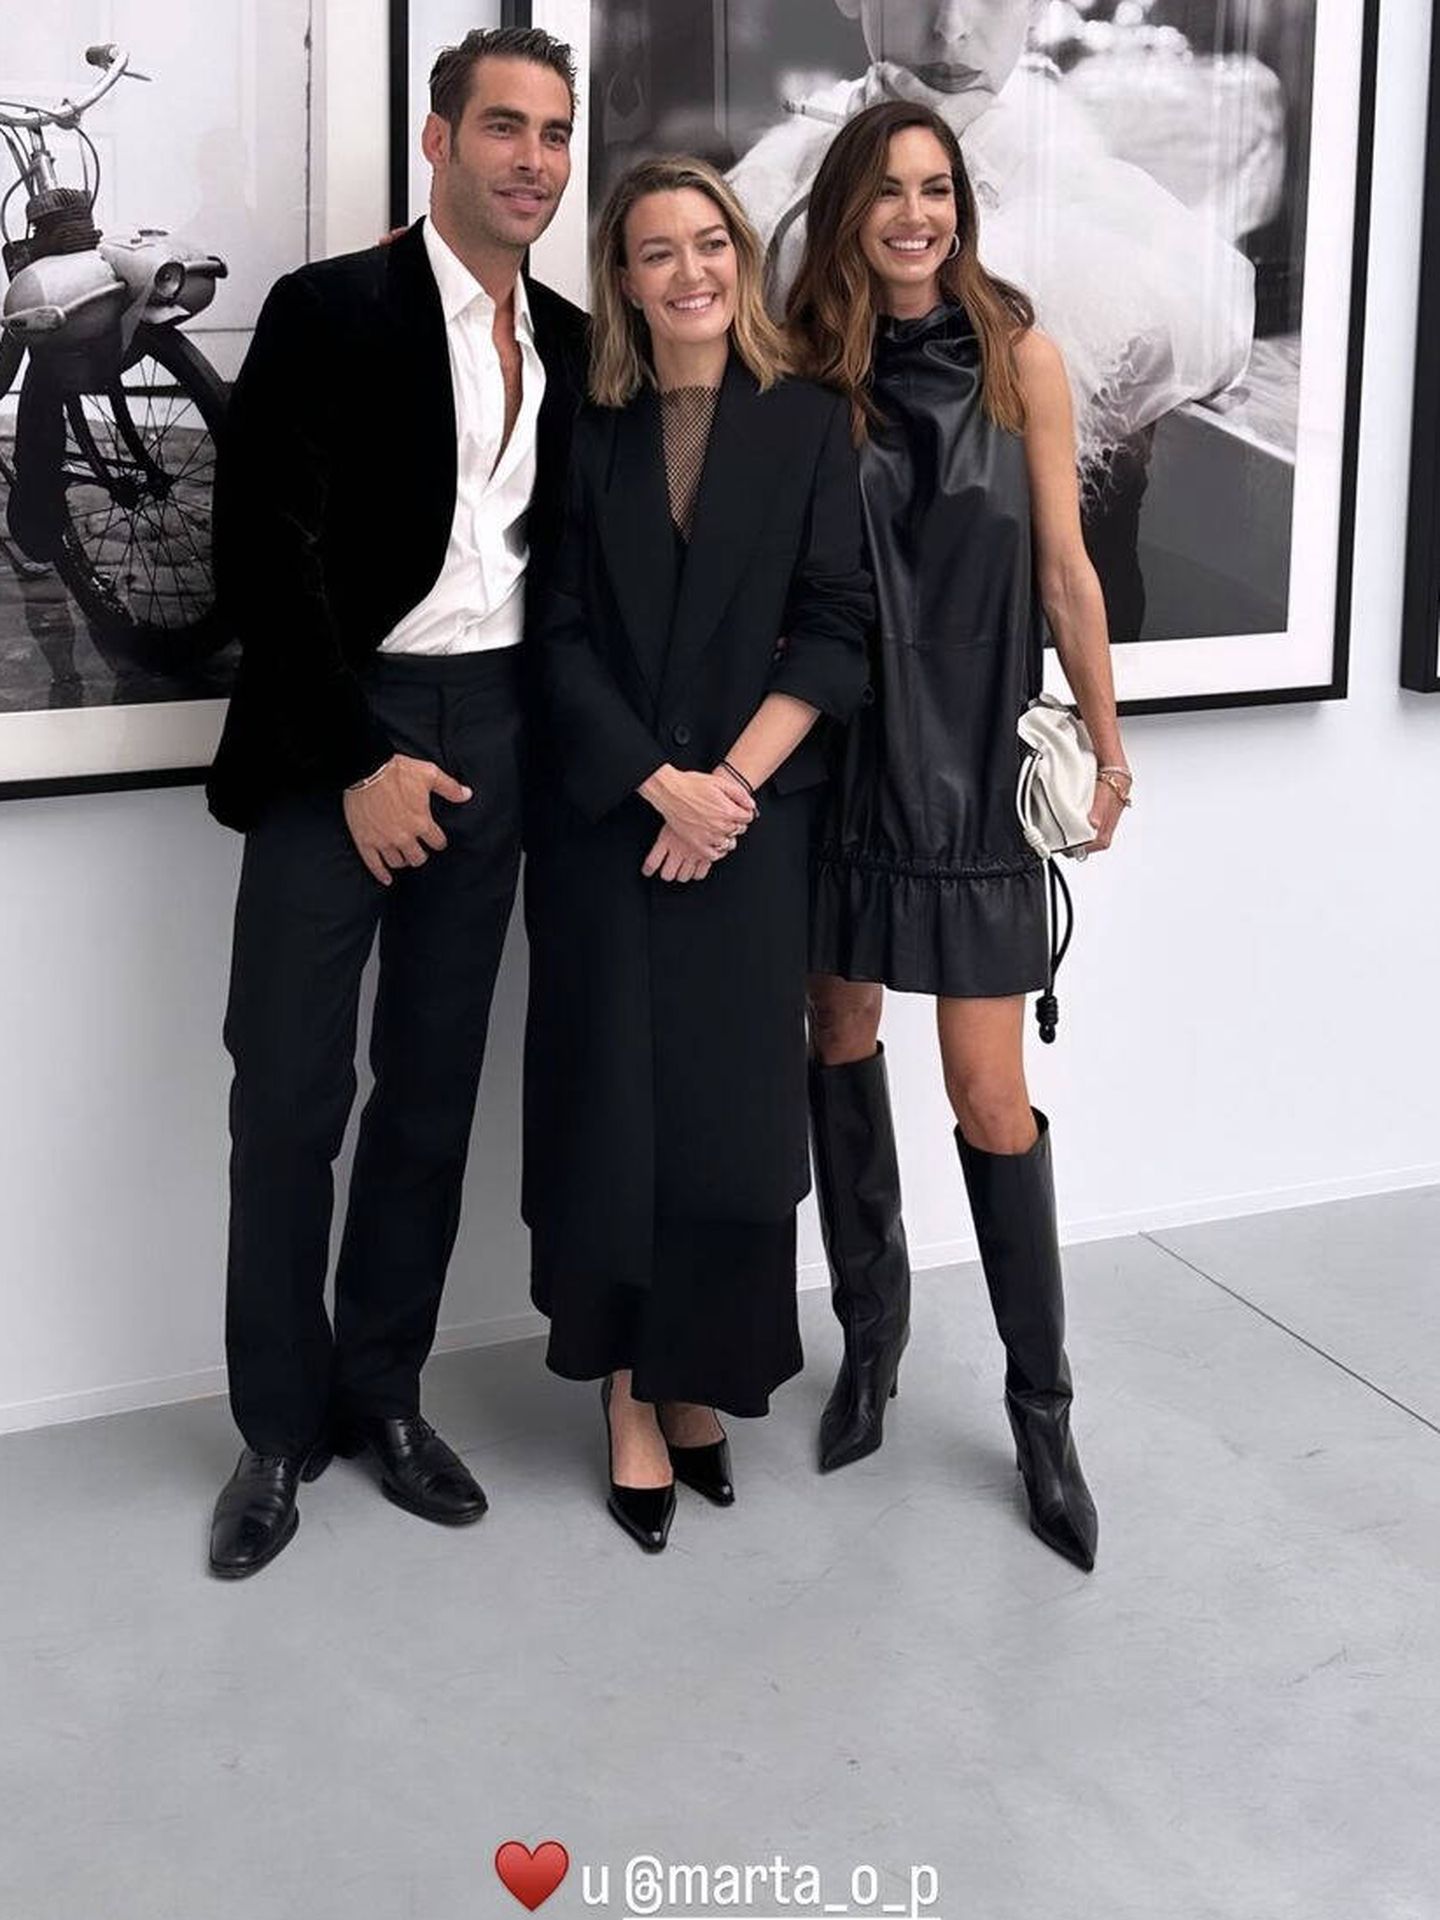  Eugenia Silva, Marta Ortega y Jon Kortajarena, en la exposición. (Instagram/@eusilva)